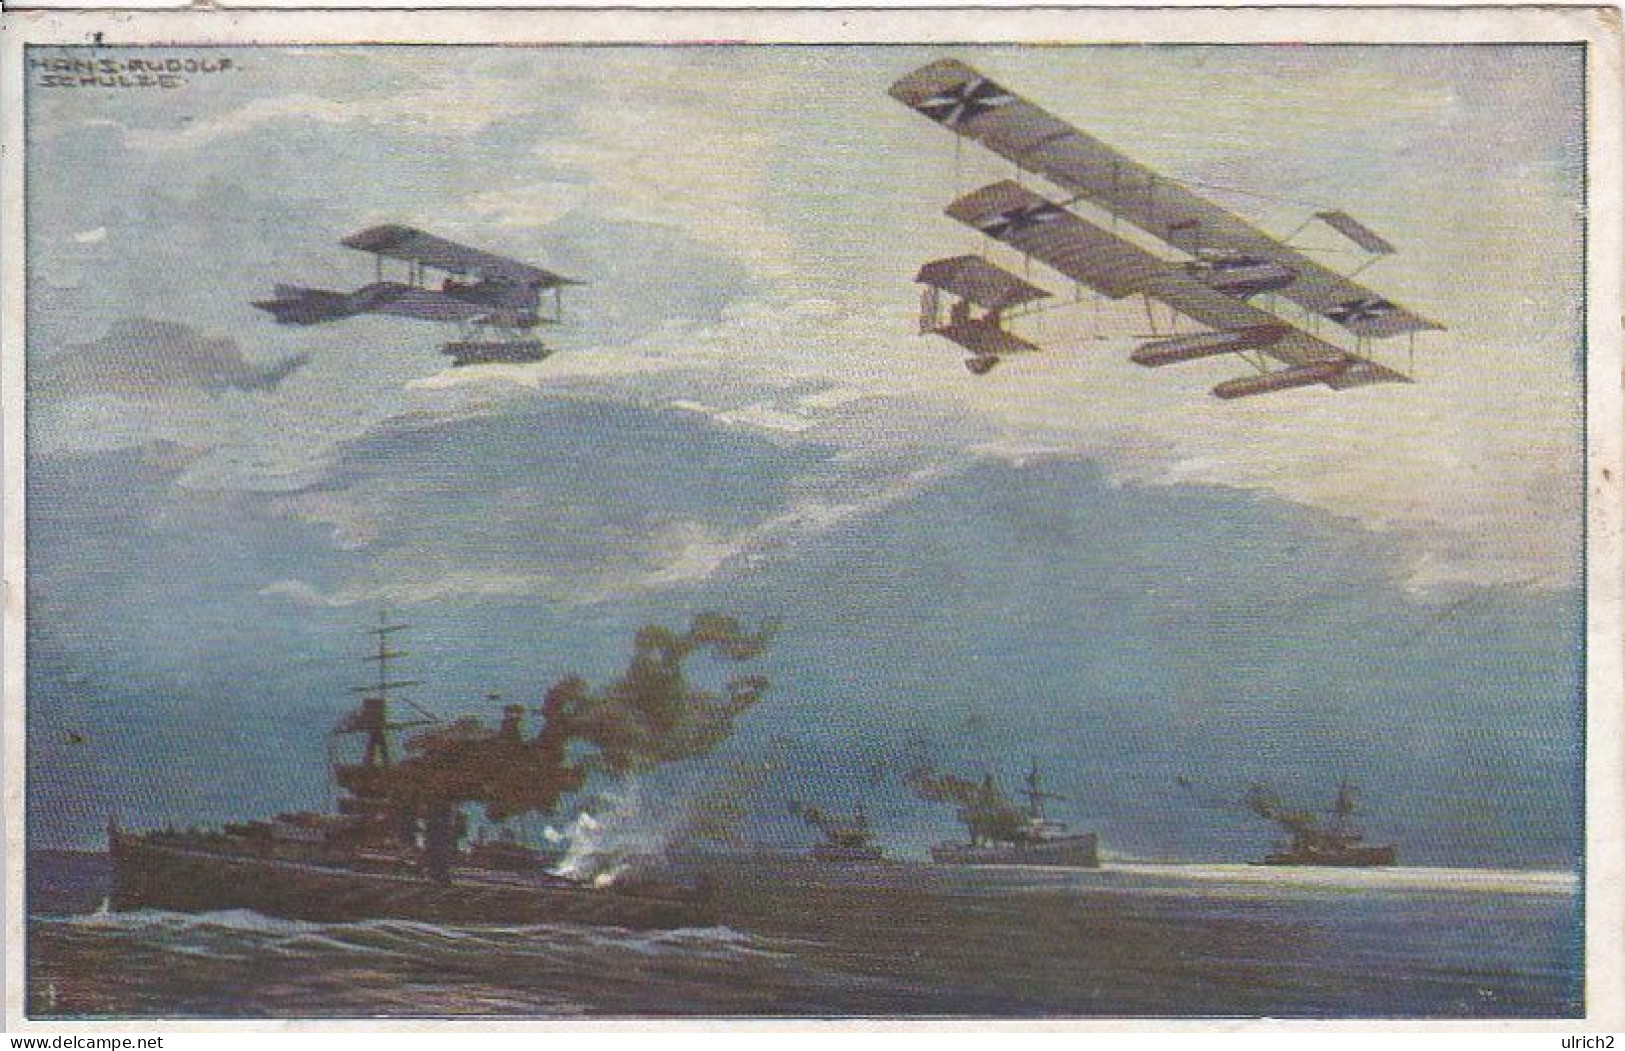 AK Wasserflugzeuge über Der Englischen Flotte - Prof. Schulze, Berlin - Luftflotten-Verein Patriotika - 1915 (69413) - Guerre 1914-18